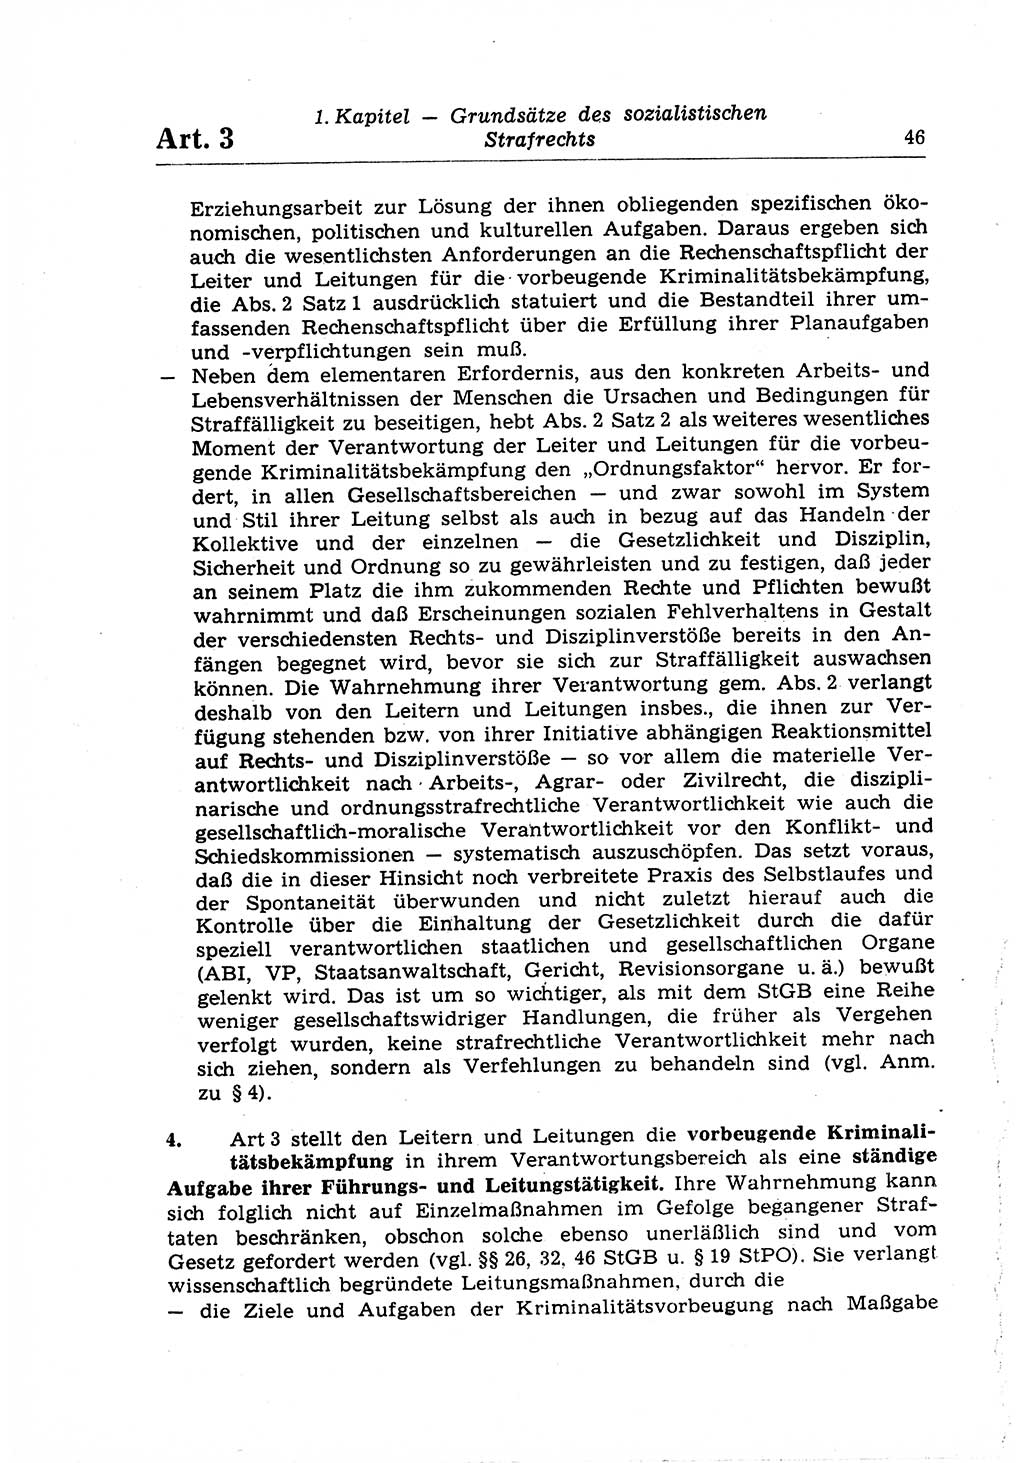 Strafrecht der Deutschen Demokratischen Republik (DDR), Lehrkommentar zum Strafgesetzbuch (StGB), Allgemeiner Teil 1969, Seite 46 (Strafr. DDR Lehrkomm. StGB AT 1969, S. 46)